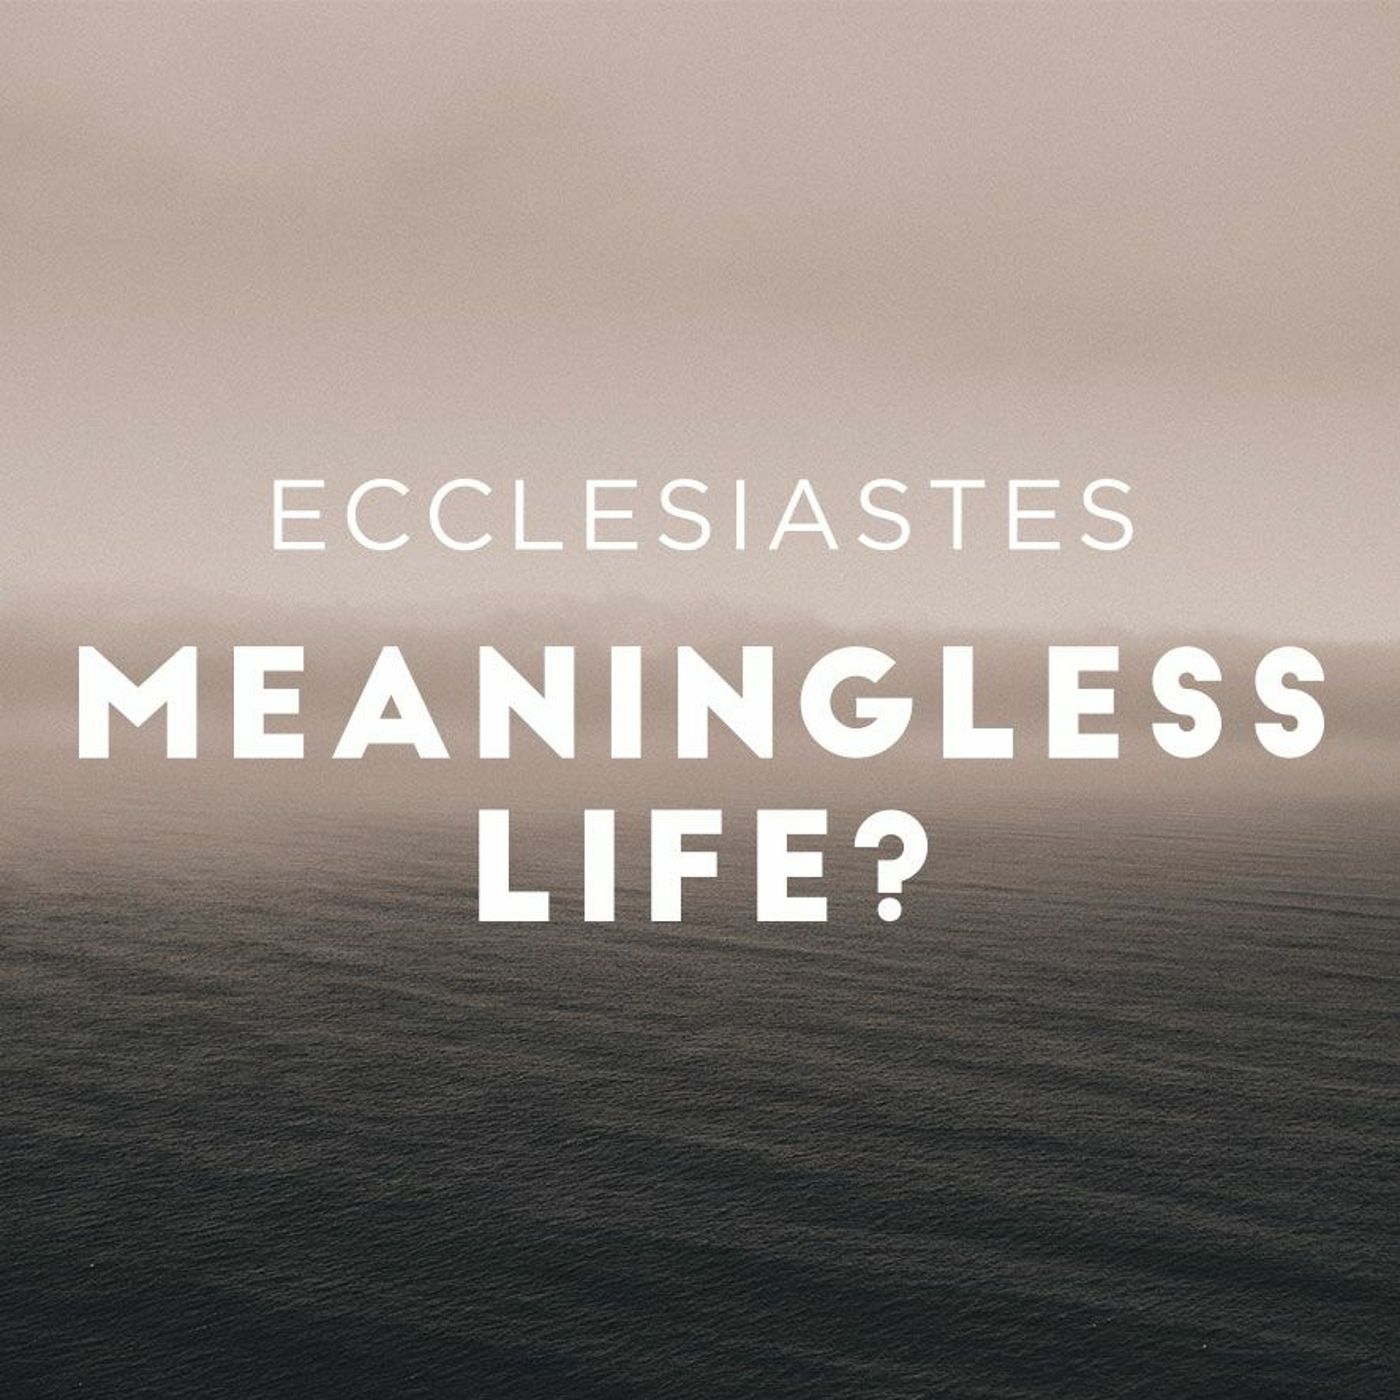 A Soul Pit Stop: Ecclesiastes 7:15-8:1